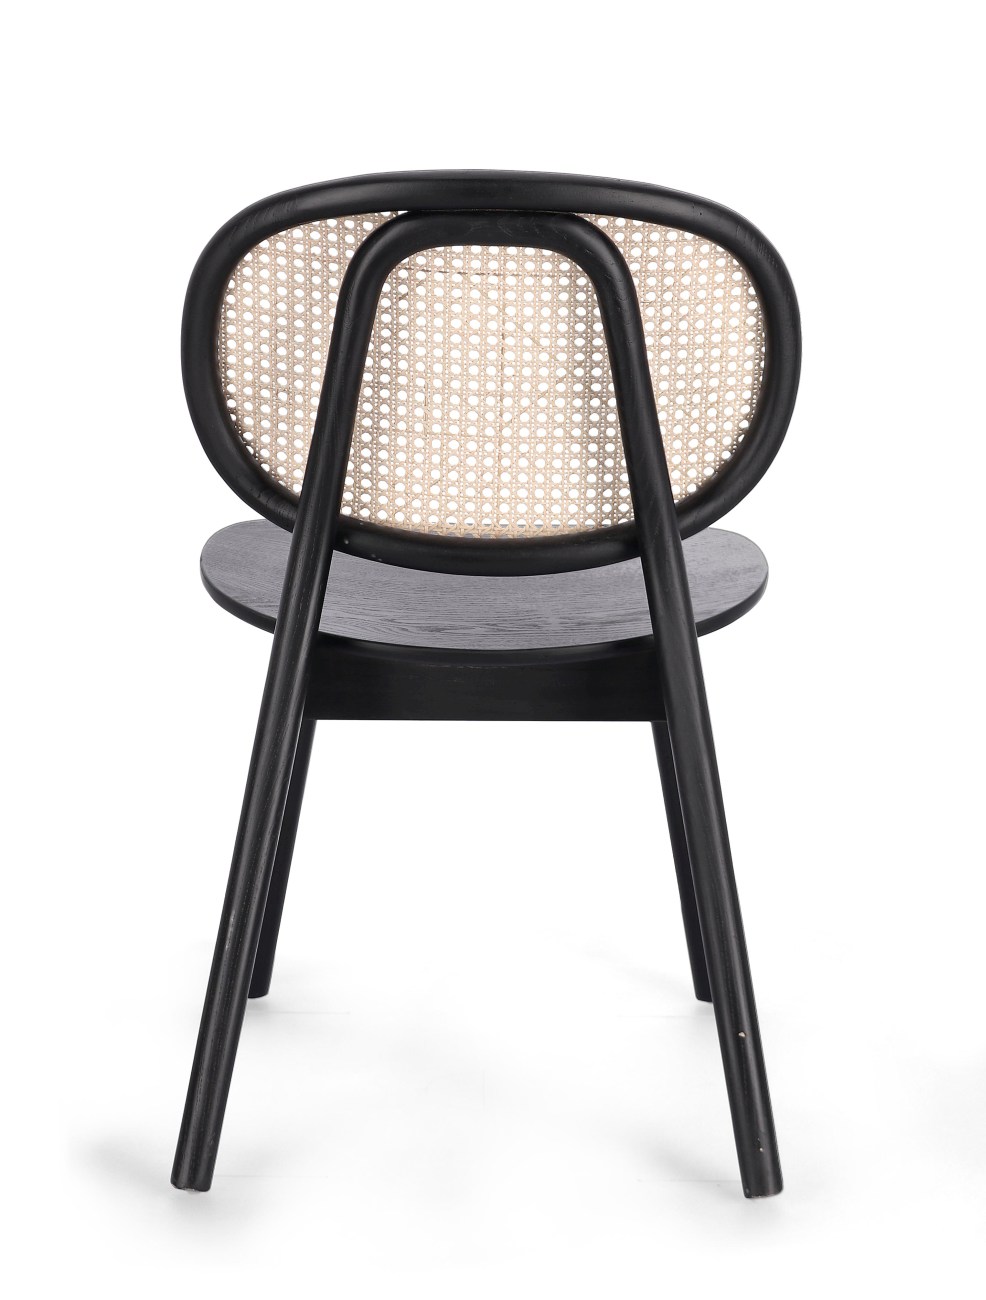 Der Esszimmerstuhl Adolis überzeugt mit seinem modernen Stil. Gefertigt wurde er aus Ulmmenholz, welcher einen schwarzen Farbton besitzt. Die Rückenlehne ist aus Rattan und hat eine natürliche Farbe. Der Stuhl besitzt eine Sitzhöhe von 46 cm.